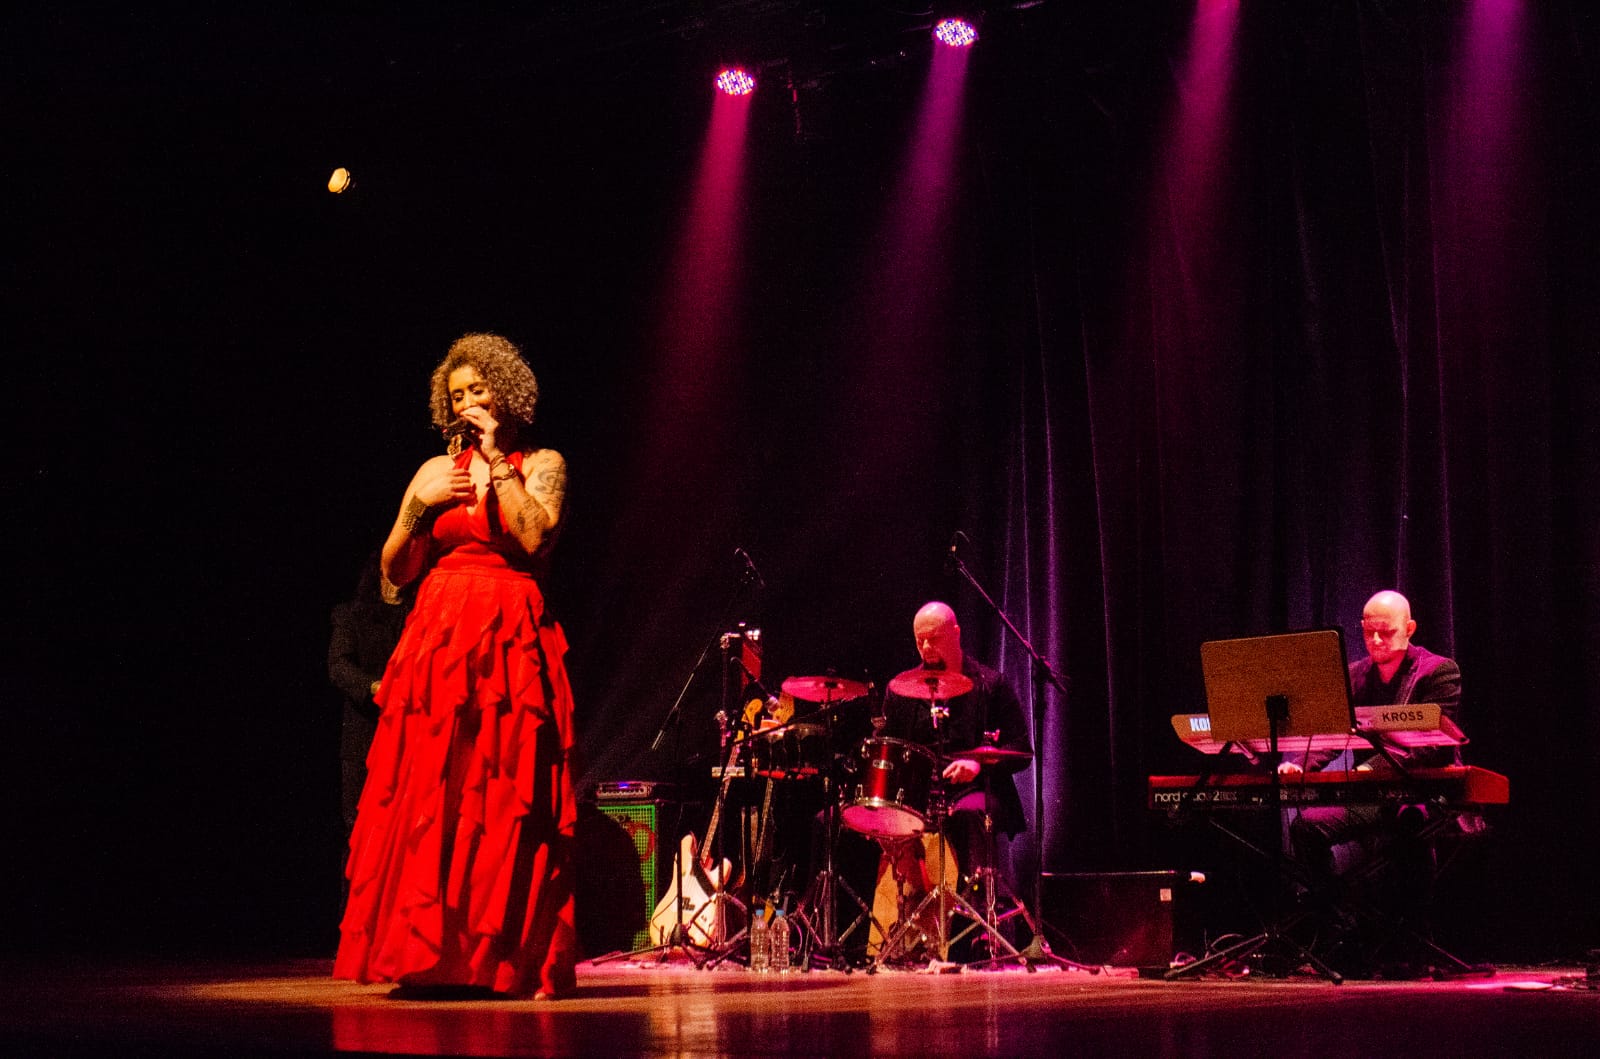 Na imagem a cantora Lia de Oliveira está cantando em um palco com luzes rosa. Ela está utilizando um vestido vermelho longo. Ao fundo há um homem tocando bateria e outro tocando teclado.